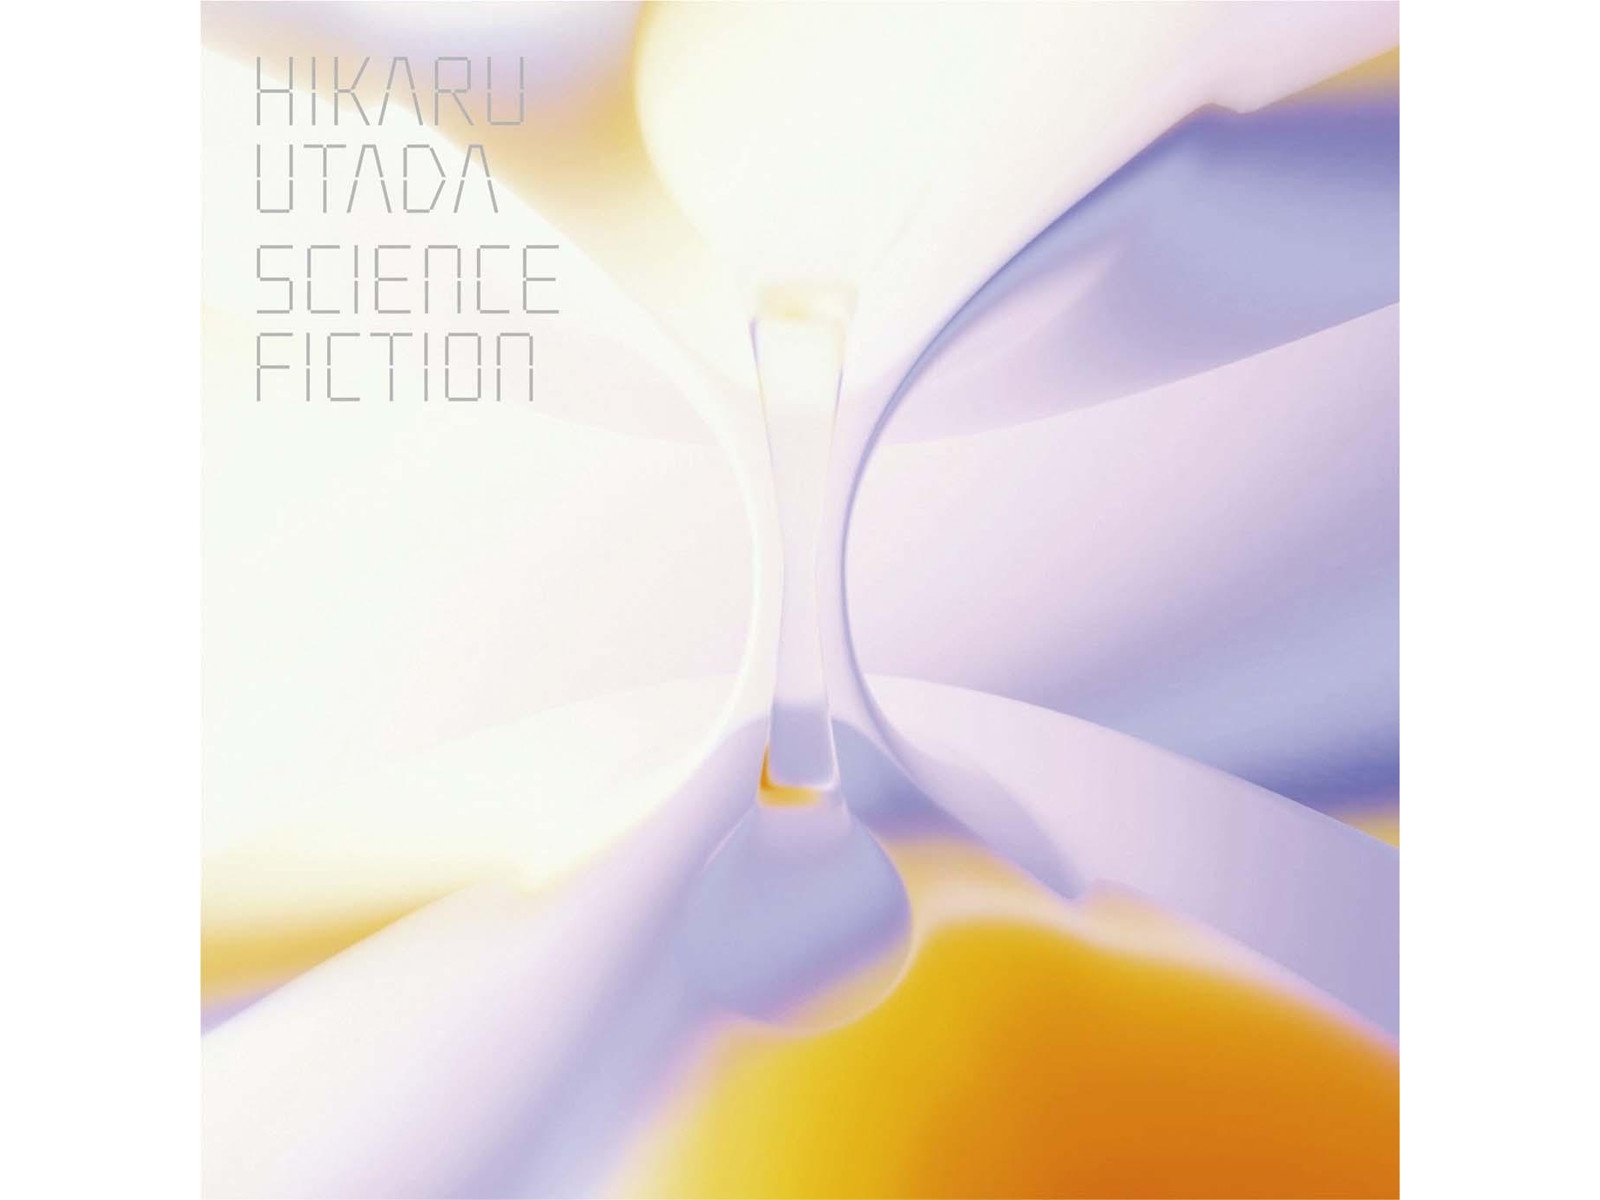 ソニーミュージック CD 宇多田ヒカル HIKARU UTADA SCIENCE FICTION(完全生産限定盤) 2枚組 店舗受取可